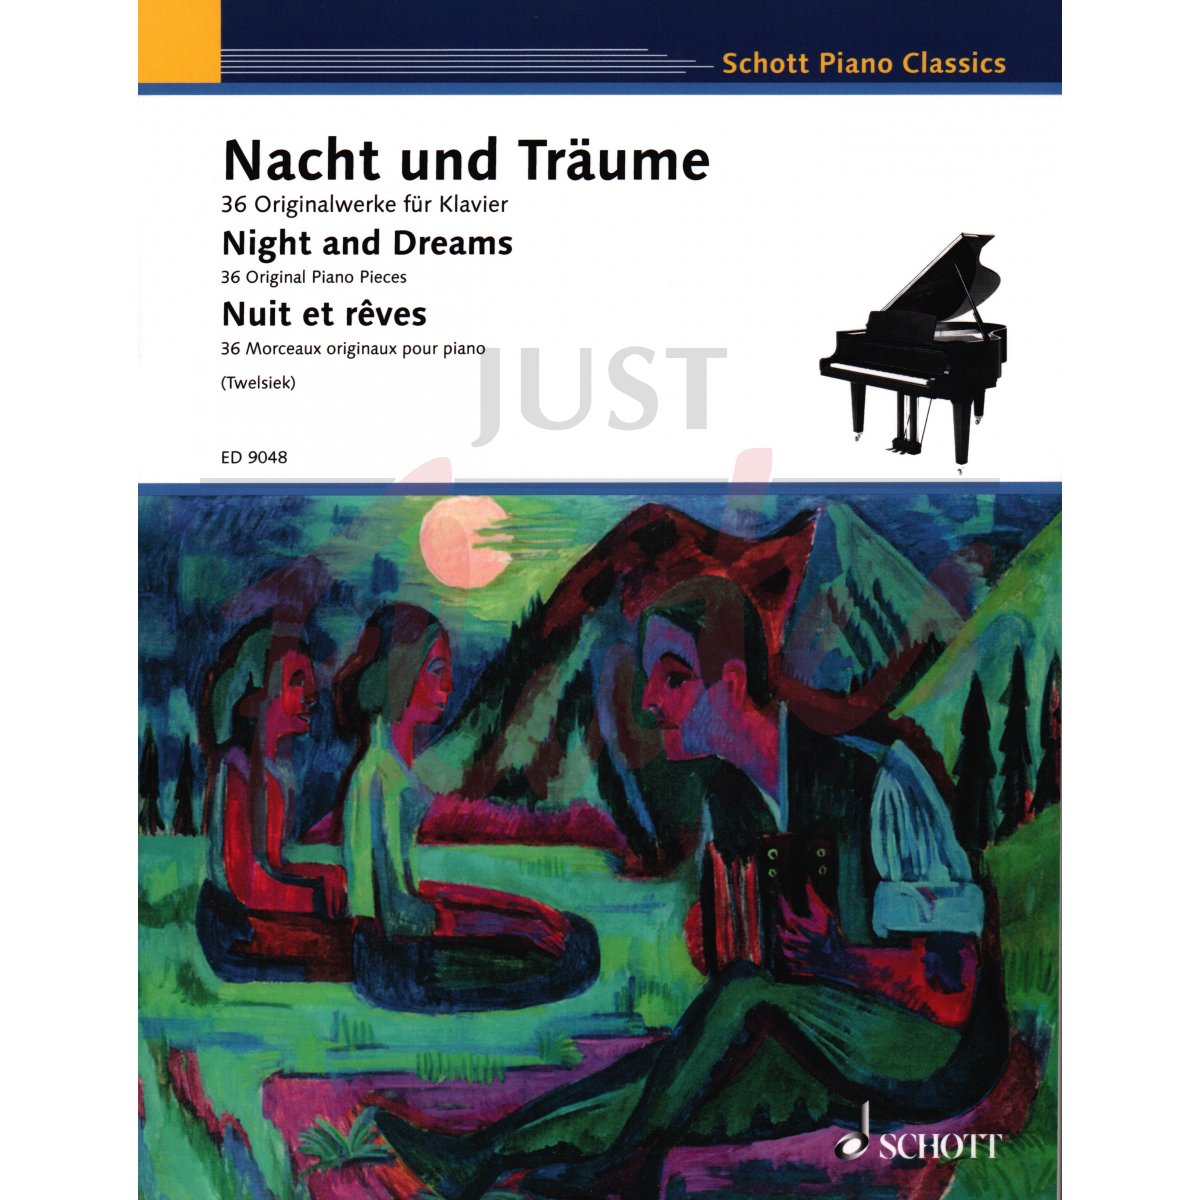 Night and Dreams - 36 Original Piano Pieces